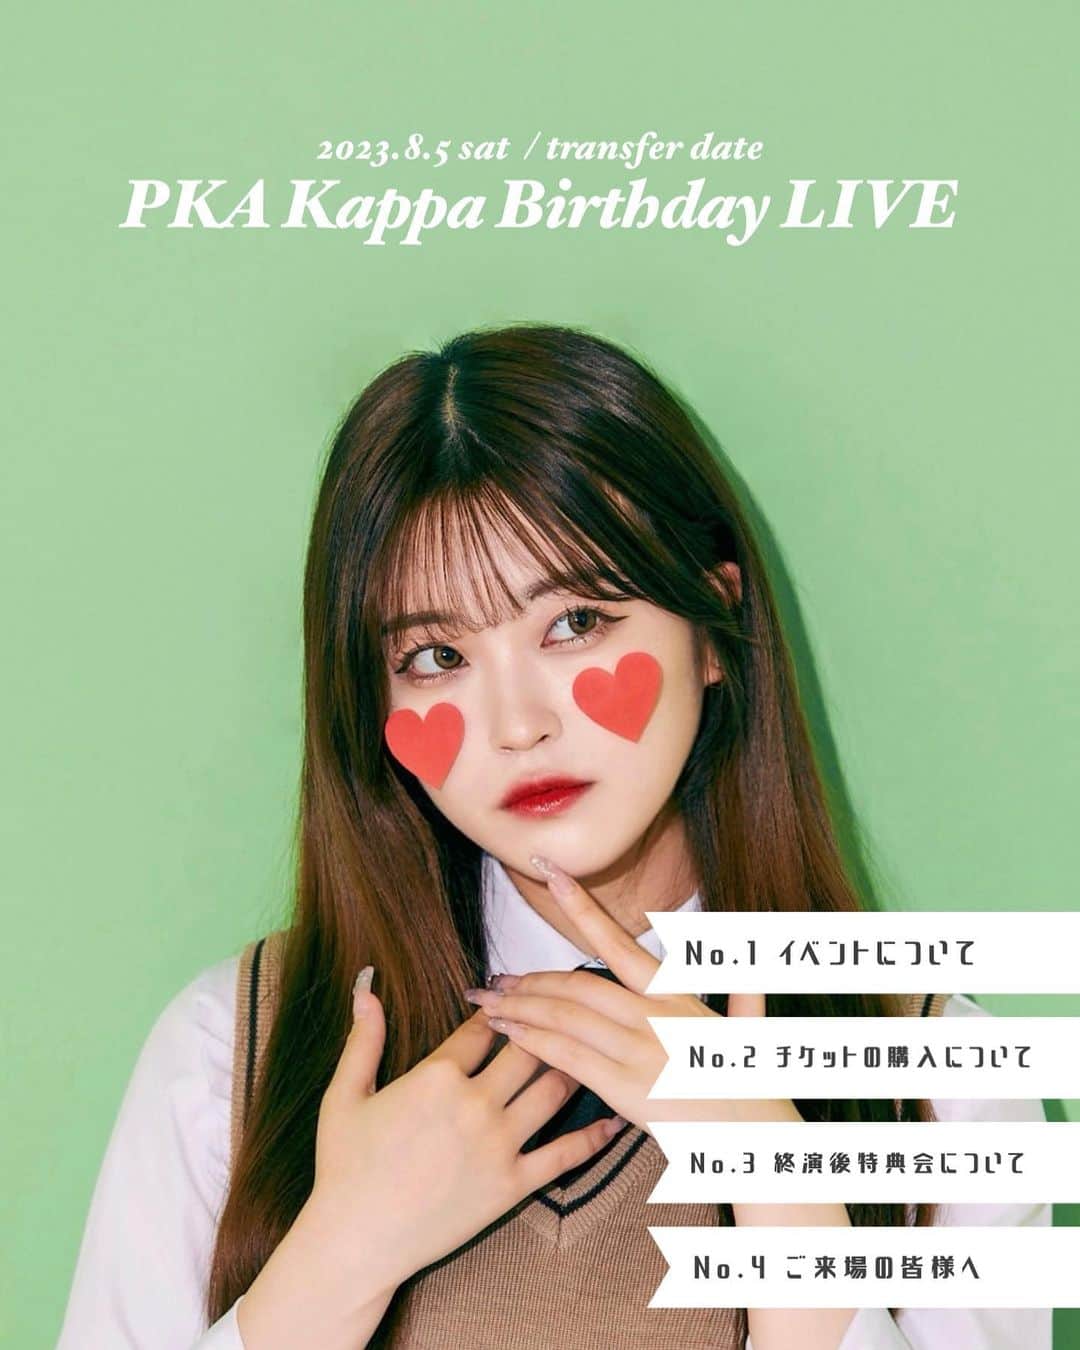 ぴーかっぱあっぷるのインスタグラム：「2023年8月5日(土)  PKA Kappa Birthday LIVE 振替公演開催決定！  23歳になるKappaのバースデーライブは本人プロデュースの青春や恋をテーマにしたこの日限りのスペシャルなステージ🏫💕🌻  ⋆┈┈┈┈┈┈┈┈┈┈┈┈┈┈┈⋆  <こちらの公演は7月1日(土)に開催予定だった公演の振替公演となります。>  【公演日時】 PKA Kappa Birthday LIVE 2023 振替公演 2023年8月5日(土) 【1部 】開場:13:00 開演:13:30 【2部 】開場:17:00 開演:17:30 ※各公演終演後に特典会(ツーショットチェキ会)実施予定  【開催場所】 ZEAL THEATER TOKYO 📌アクセス 〒105-0004 東京都港区新橋3-5-10 B1F ※ZEAL THEATER SHINJUKU(新宿)とお間違いのないようお気をつけください。  ✎︎＿＿＿＿＿＿＿＿＿＿＿＿  🫶🏻チケットのご購入は@pka__321 のハイライトをチェック🫶🏻  【チケット】 本イベントは4種類のチケットをご用意しております。  ❶SS チケット ¥9,000  チケット特典▶最優先入場・前方スタンディング席・ライブ前グリーティング参加券※1・特典会(チェキ会)参加確約券1枚・イベント限定トレーディングカード・サイン入りピンチェキ1枚 ※ライブ前グリーティングとは…当日公演開始前にPKA3人とお客様のスマートフォンで写真撮影・交流ができます。 ライブ前グリーティングスケジュール【1部12:30~13:00 / 2部16:30~17:00】※各部5分前集合  ❷Sチケット ¥5,000 チケット特典▶優先入場・中央スタンディング席・特典会(チェキ会)参加確約券1枚・イベント限定トレーディングカード・サイン入りピンチェキ1枚  ❸通常チケット ¥1,500 チケット特典▶最終入場・後方スタンディング席・イベント限定トレーディングカード  ❹無料お試しチケット ¥0  PKAのイベントにとりあえず行ってみたいけどよくわからない…そんな方にはこちらの無料お試しチケットがおすすめです。 チケット詳細▶最終入場・後方スタンディング席・特典なし   ※無料チケットは一般発売と同時の先着配布となります。 ※当日ワンドリンク代600円が全てのチケットに別途発生いたします。  ⋆┈┈┈┈┈┈┈┈┈┈┈┈┈┈┈⋆  ▼注意事項  ※SS・Sチケット特典のチェキ会参加確約券はメンバー1人を選んで1回特典会(チェキ撮影)に必ずご参加いただける券です。 ※当日券はチケットに余りがあり次第¥2,000にて販売いたします。当日券には特典はつきません。予めご了承ください。 ※本人確認をお願いする場合が御座いますので、お客様のお名前が分かる身分証(コピーでも可)をご用意下さい。 ※メンバーへのプレゼントは会場にプレゼントBOXを設置しておりますのでご自身のお名前とメンバーの名前を記載の上、入れて頂きますようお願い致します。 ※お菓子やジュースなど全ての飲食物の贈り物は禁止とさせて頂きます。  ⋆┈┈┈┈┈┈┈┈┈┈┈┈┈┈┈⋆  【終演後特典会について】 各公演終演後に特典会を実施致します。特典会の内容は「チェキ会」を行います。特典会の参加には当日物販レジにて販売のチェキ会参加券orチケット特典の特典会参加確約券のどちらかが必要となります。チェキ会はお好きなメンバーとお客様と2ショットチェキの撮影をお楽しみいただけます。  特典券1枚　¥1,000  ※お支払いは現金のみとなります。  ▽事前物販について 当日、混雑が予想されるため公演前に事前物販にて特典券(両公演の事前物販販売分)の販売を実施いたします。下記時間になりましたら会場物販レジにて購入が可能です。  事前物販　11:00-12:00  ▽特典会に関する注意事項 ※お客様にはマスクを着用して頂いた状態での特典会実施となります。予めご了承下さい。 ※特典券は無くなり次第終了となりますので、予めご了承下さい。 ※当日の混在状況により購入制限をかけさせていただきます。予めご了承下さい。 ※特典券は当日限り有効とさせて頂きます。 ※購入後の不良品以外の返品・交換は原則行いません。  ⋆┈┈┈┈┈┈┈┈┈┈┈┈┈┈┈⋆  【入場開始時間について】 ※入場開始時間の10分前を目安に会場へご来場ください。 ※入場開始時間については、チケットにも記載しておりますので必ずご確認ください。 ※それより早くご来場いただいてもお待ちいただく場所がございませんので、お時間に合わせてお越しくださいますようお願いいたします。」